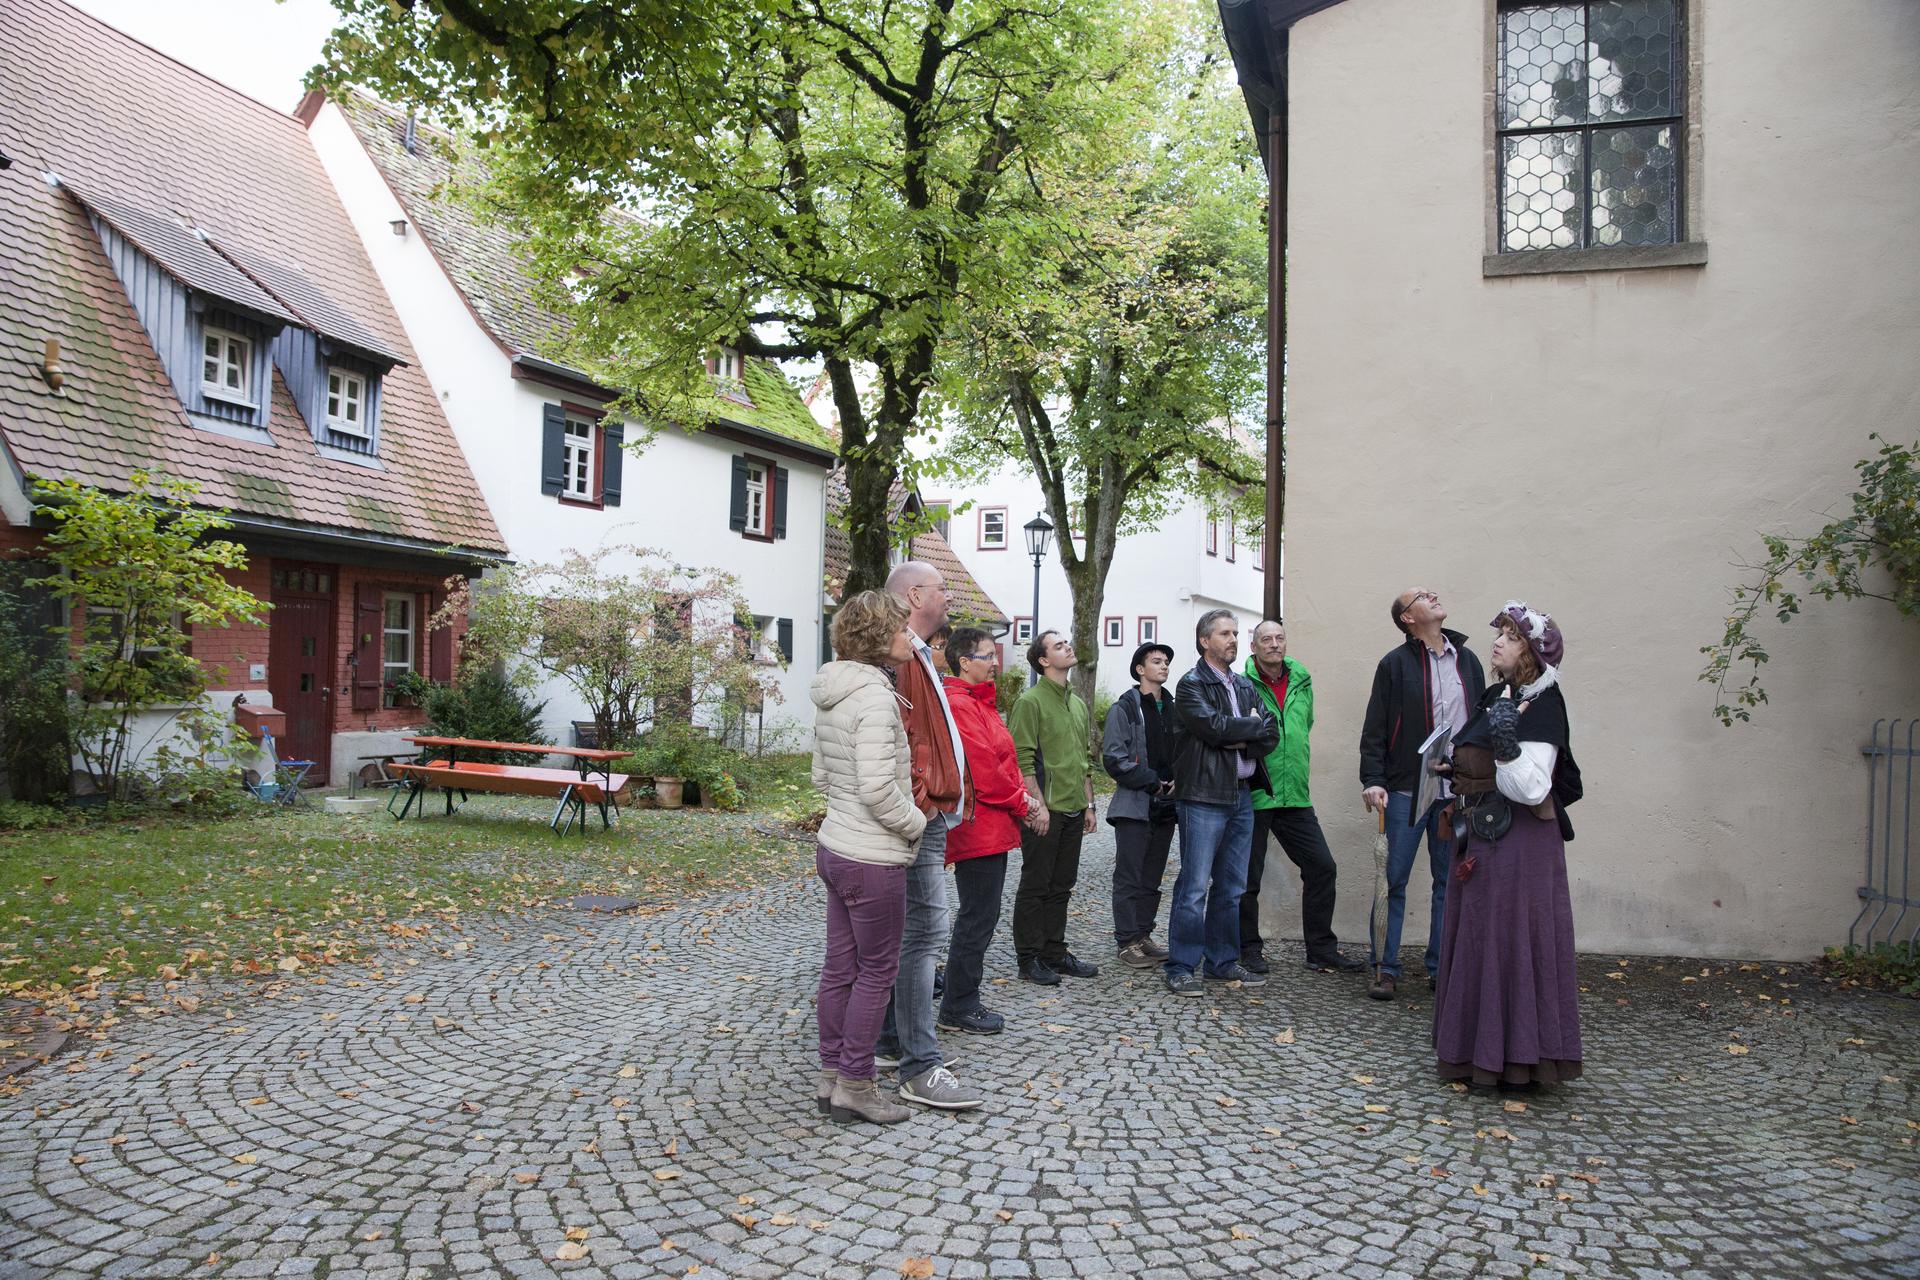 Stadtführung mit dem Marktweib Marga in Münsingen im Biosphärengebiet Schwäbische Alb. Eine Person in einem mittelalterlichen Kostüm steht vor einer Gruppe und erzählt. Die Gruppe hört ihr zu. Sie stehen auf einem kleinen Platz. Hinter ihnen sind kleine Häuser und zwei Bäume.